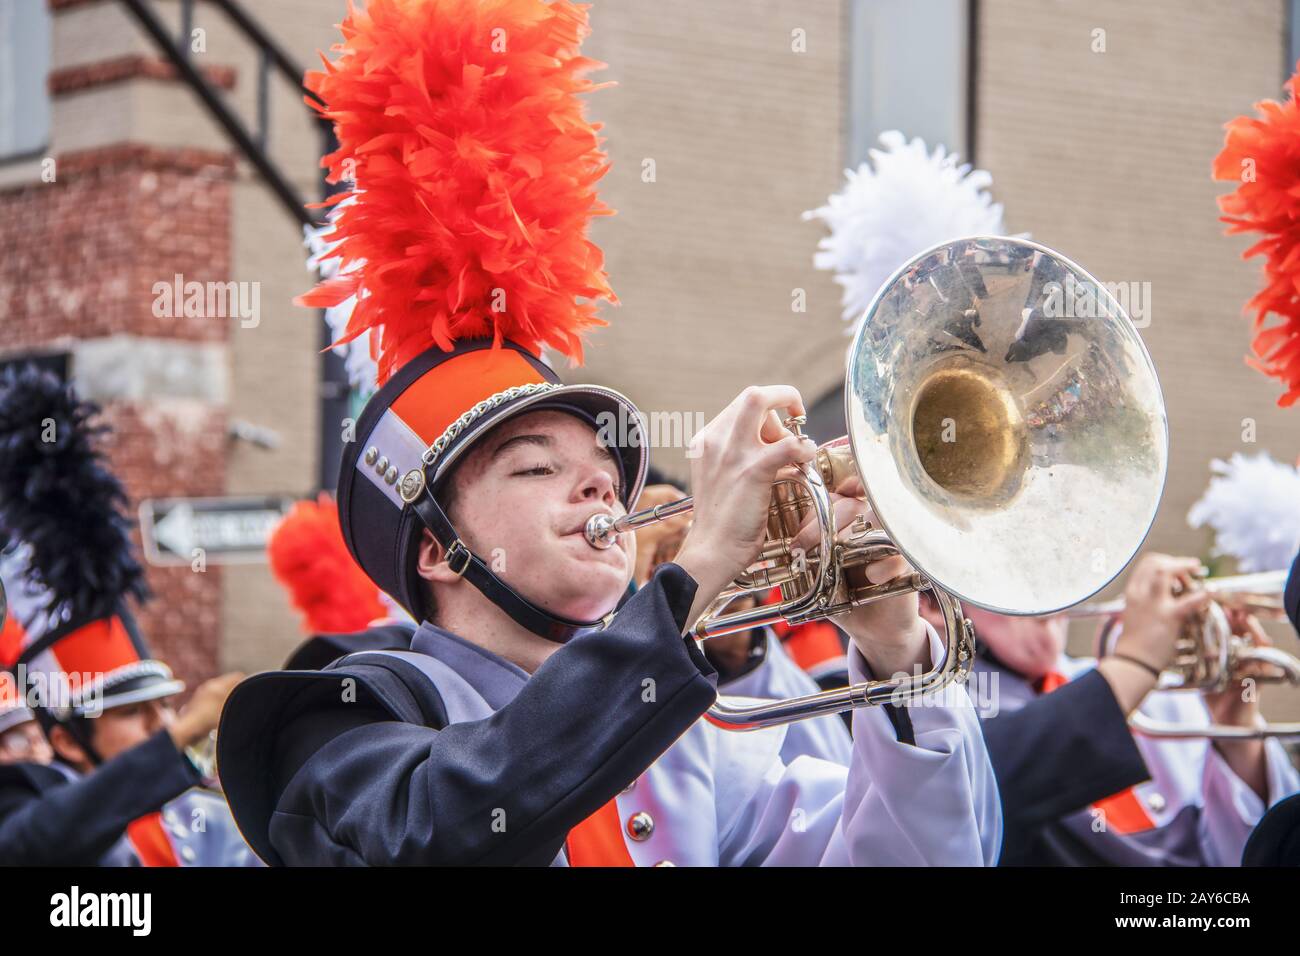 8-28-2019 Tahlequah USA - el joven en uniforme juega con entusiasmo el trombón en un desfile de la banda de marcha de la escuela secundaria con otros miembros de la banda blurr Foto de stock